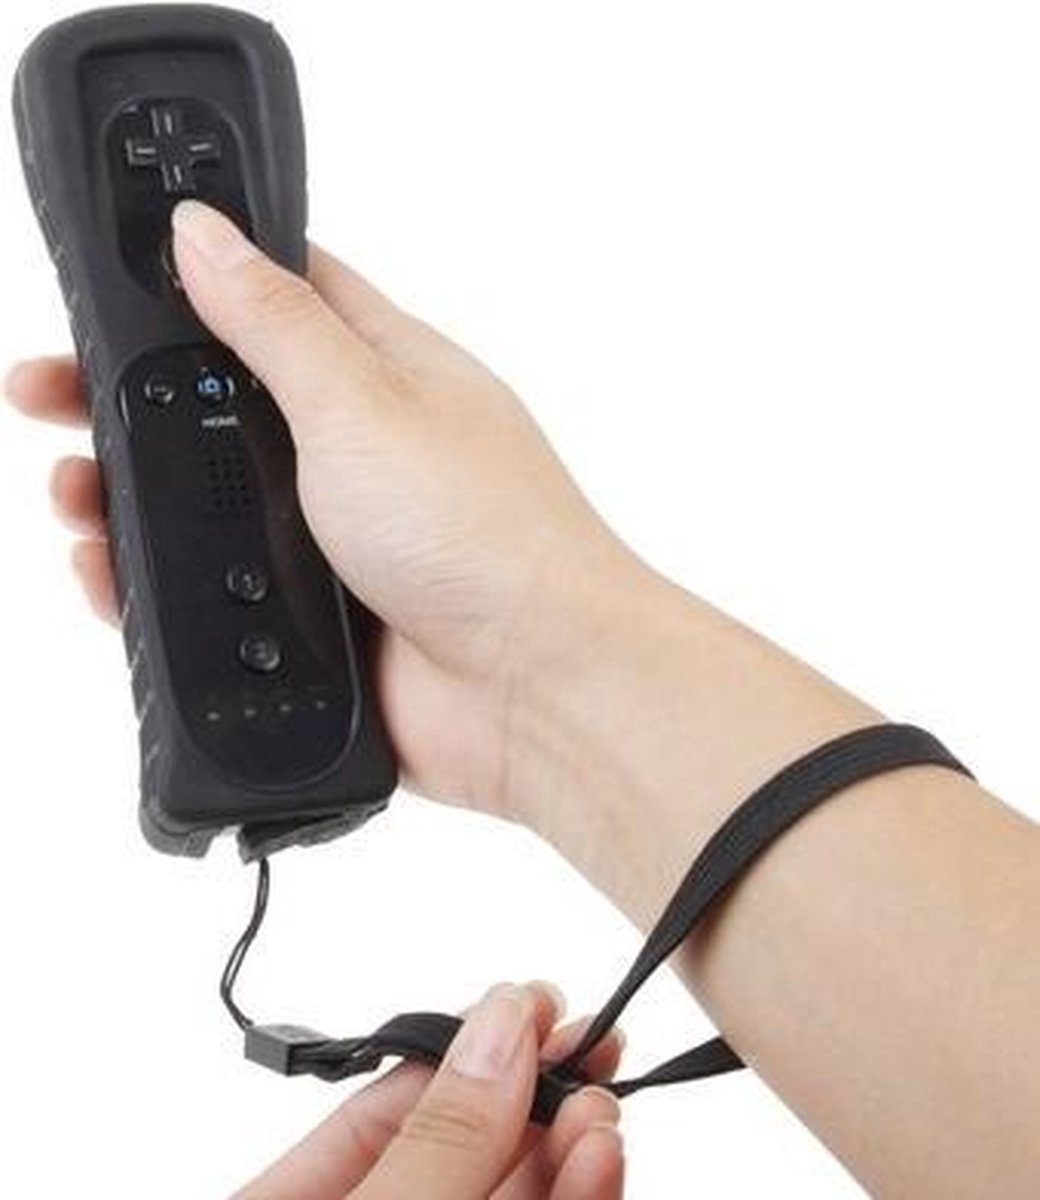 Wii Remote Controller - afstandbediening voor Wii(zwart) - Dutch Wanted